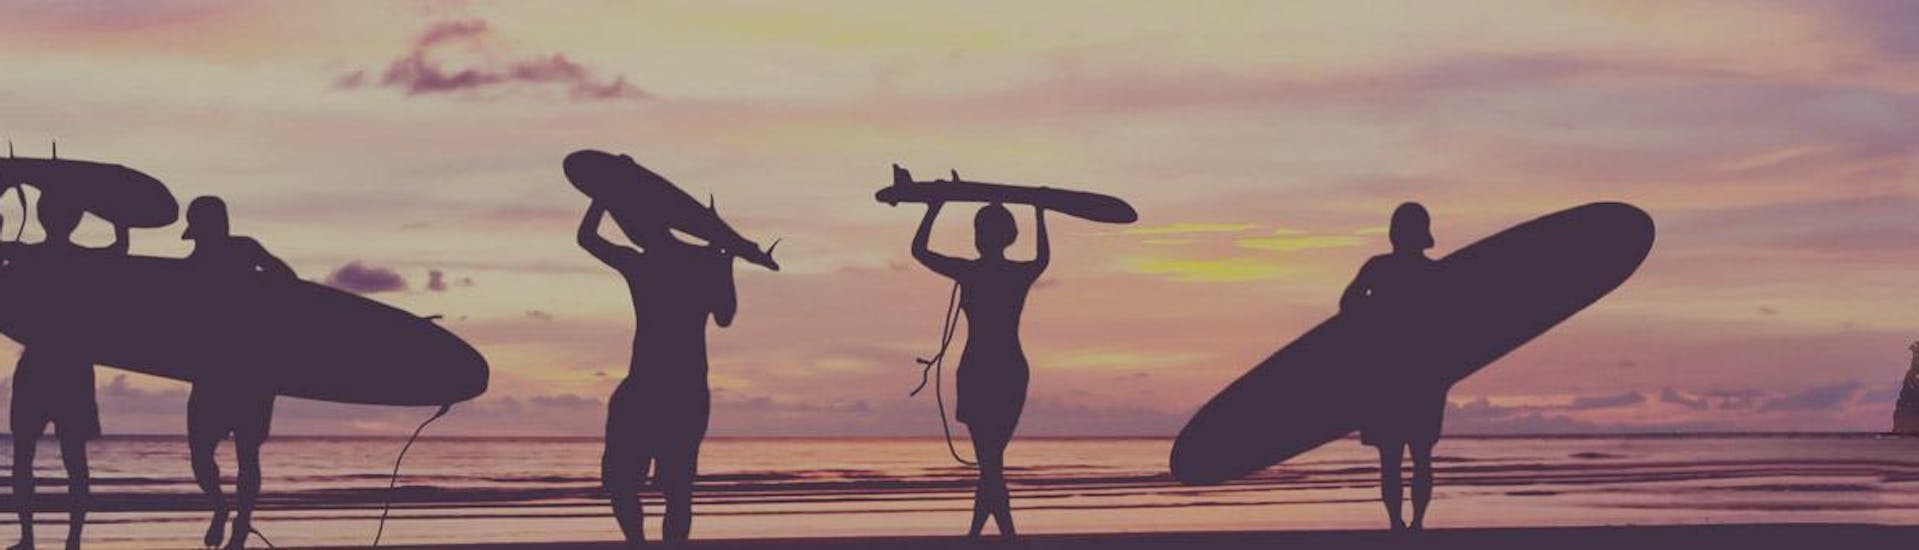 Des surfeurs marchent sur la plage au coucher du soleil avec leur planche de surf sur la tête ou sous le bras à la fin de leur cours de surf avec transfert vers Hendaye pendant la haute saison avec l'École de surf Hendaia.